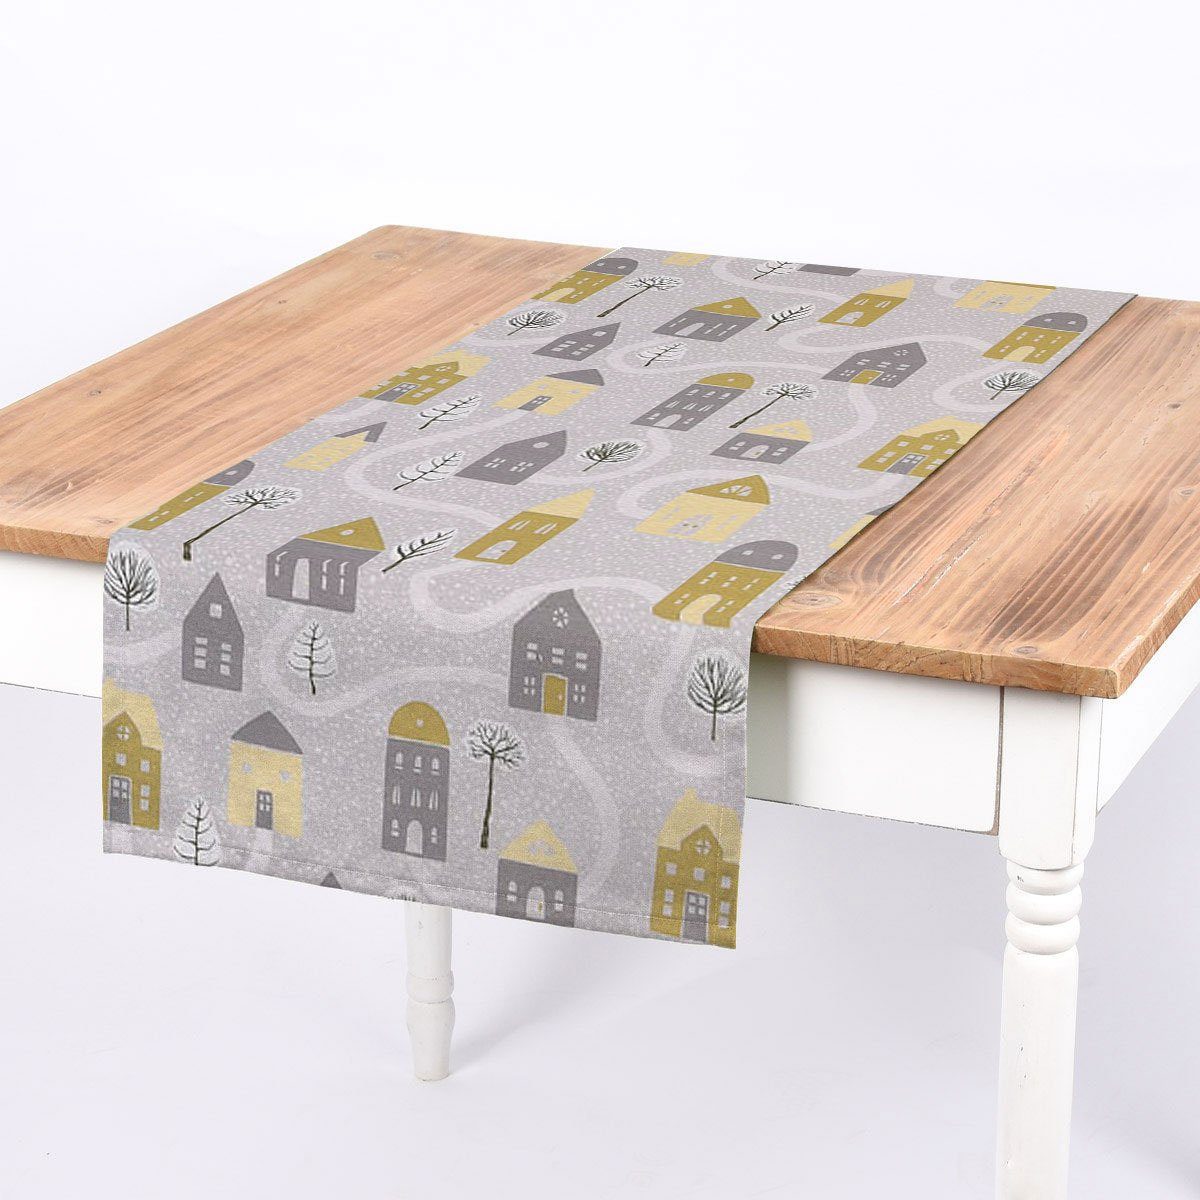 SCHÖNER LEBEN. Tischläufer SCHÖNER LEBEN. Tischläufer Aspen Häuser grau gelb 40x160cm, handmade